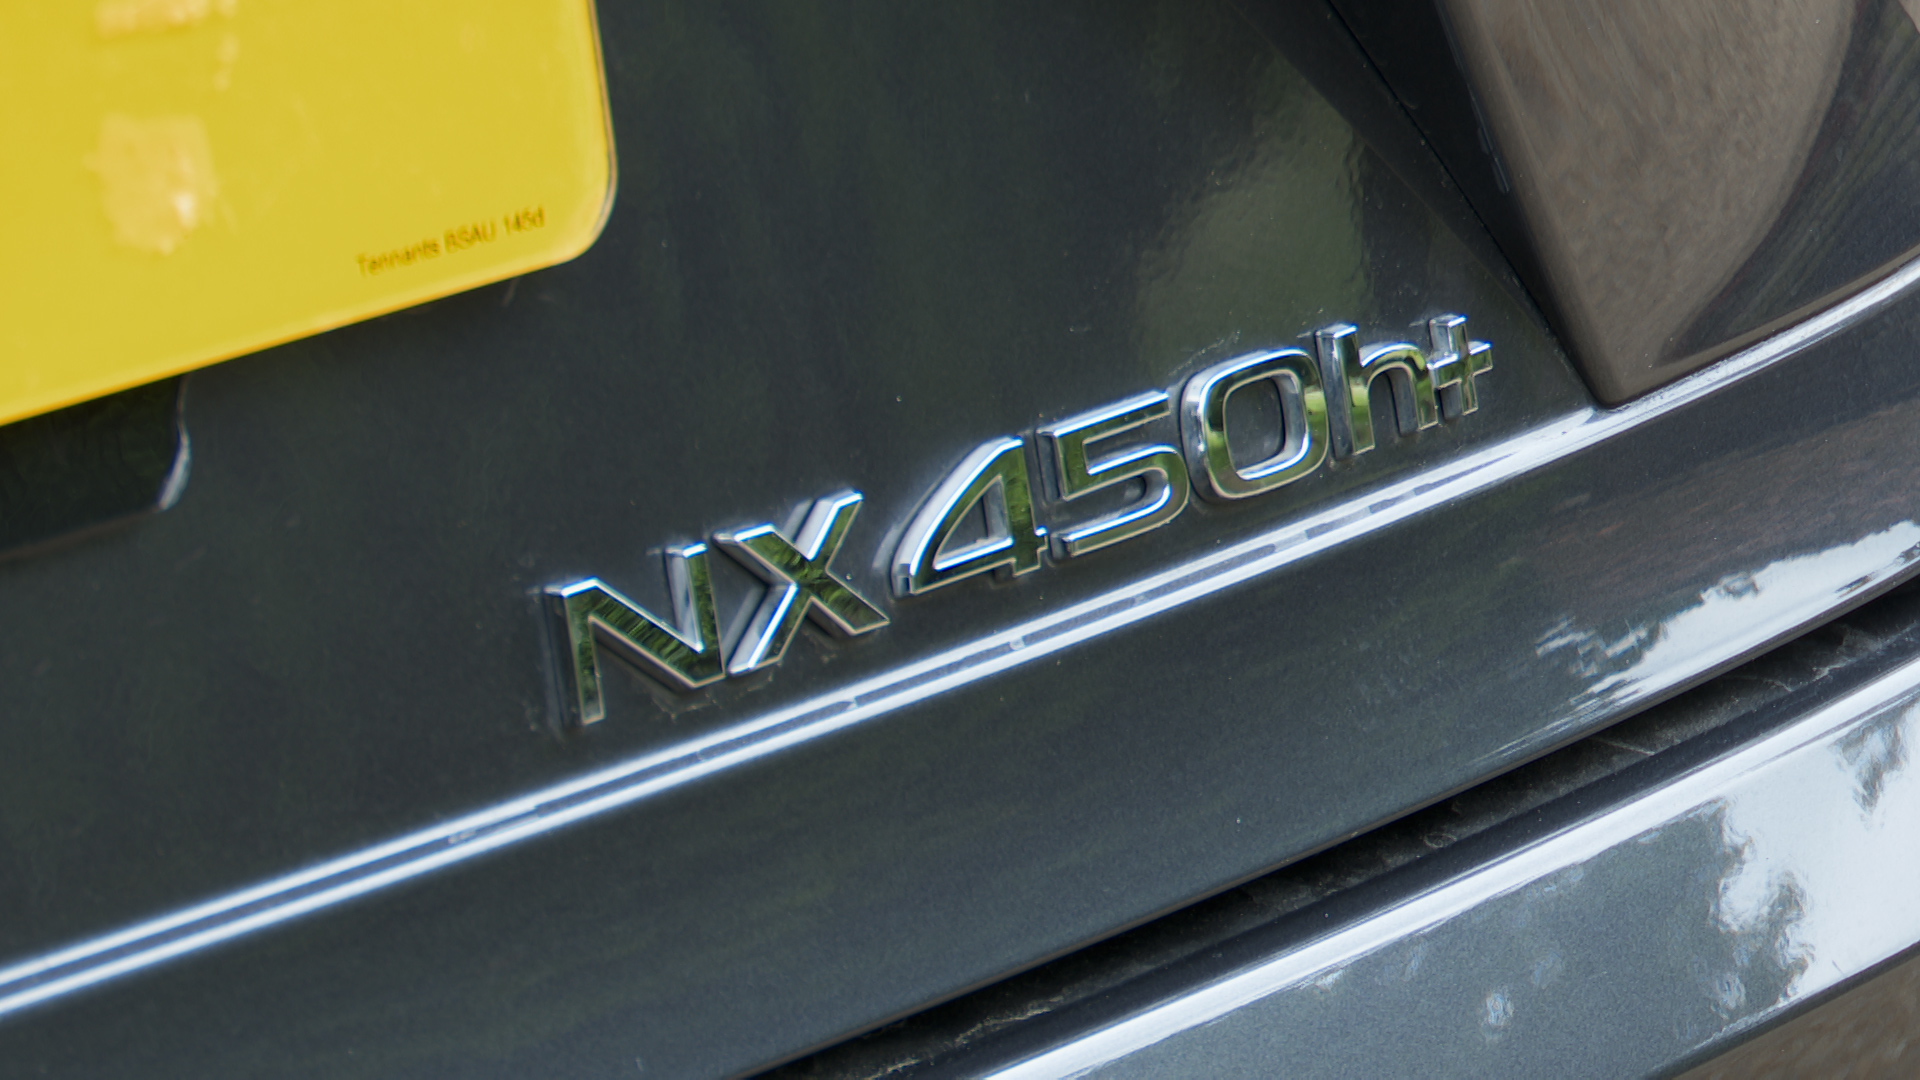 LEXUS NX ESTATE 350h 2.5 5dr E-CVT [Premium Pack/Pan roof]